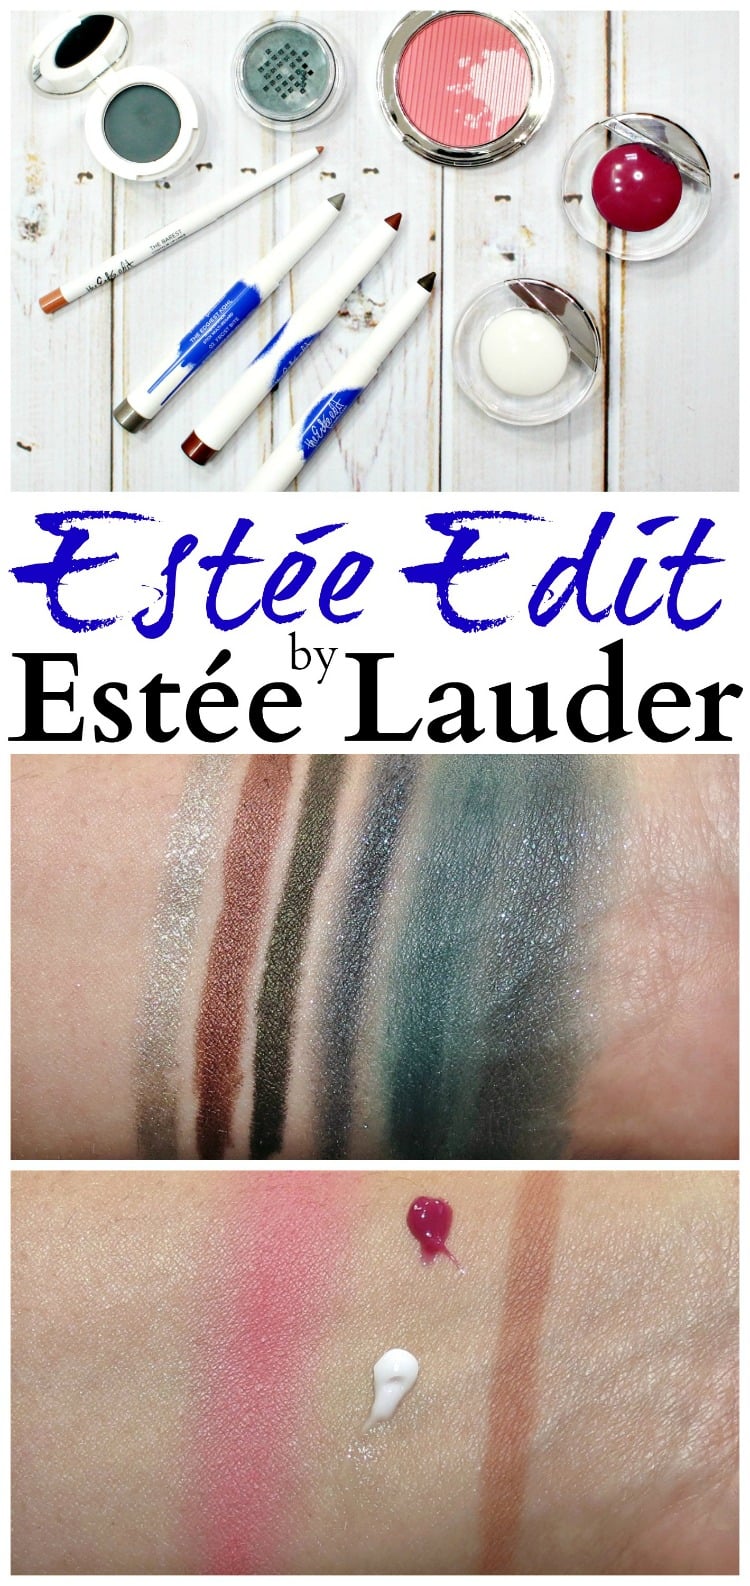 Estée Lauder Estée Edit Makeup Swatches review swatch pics photos